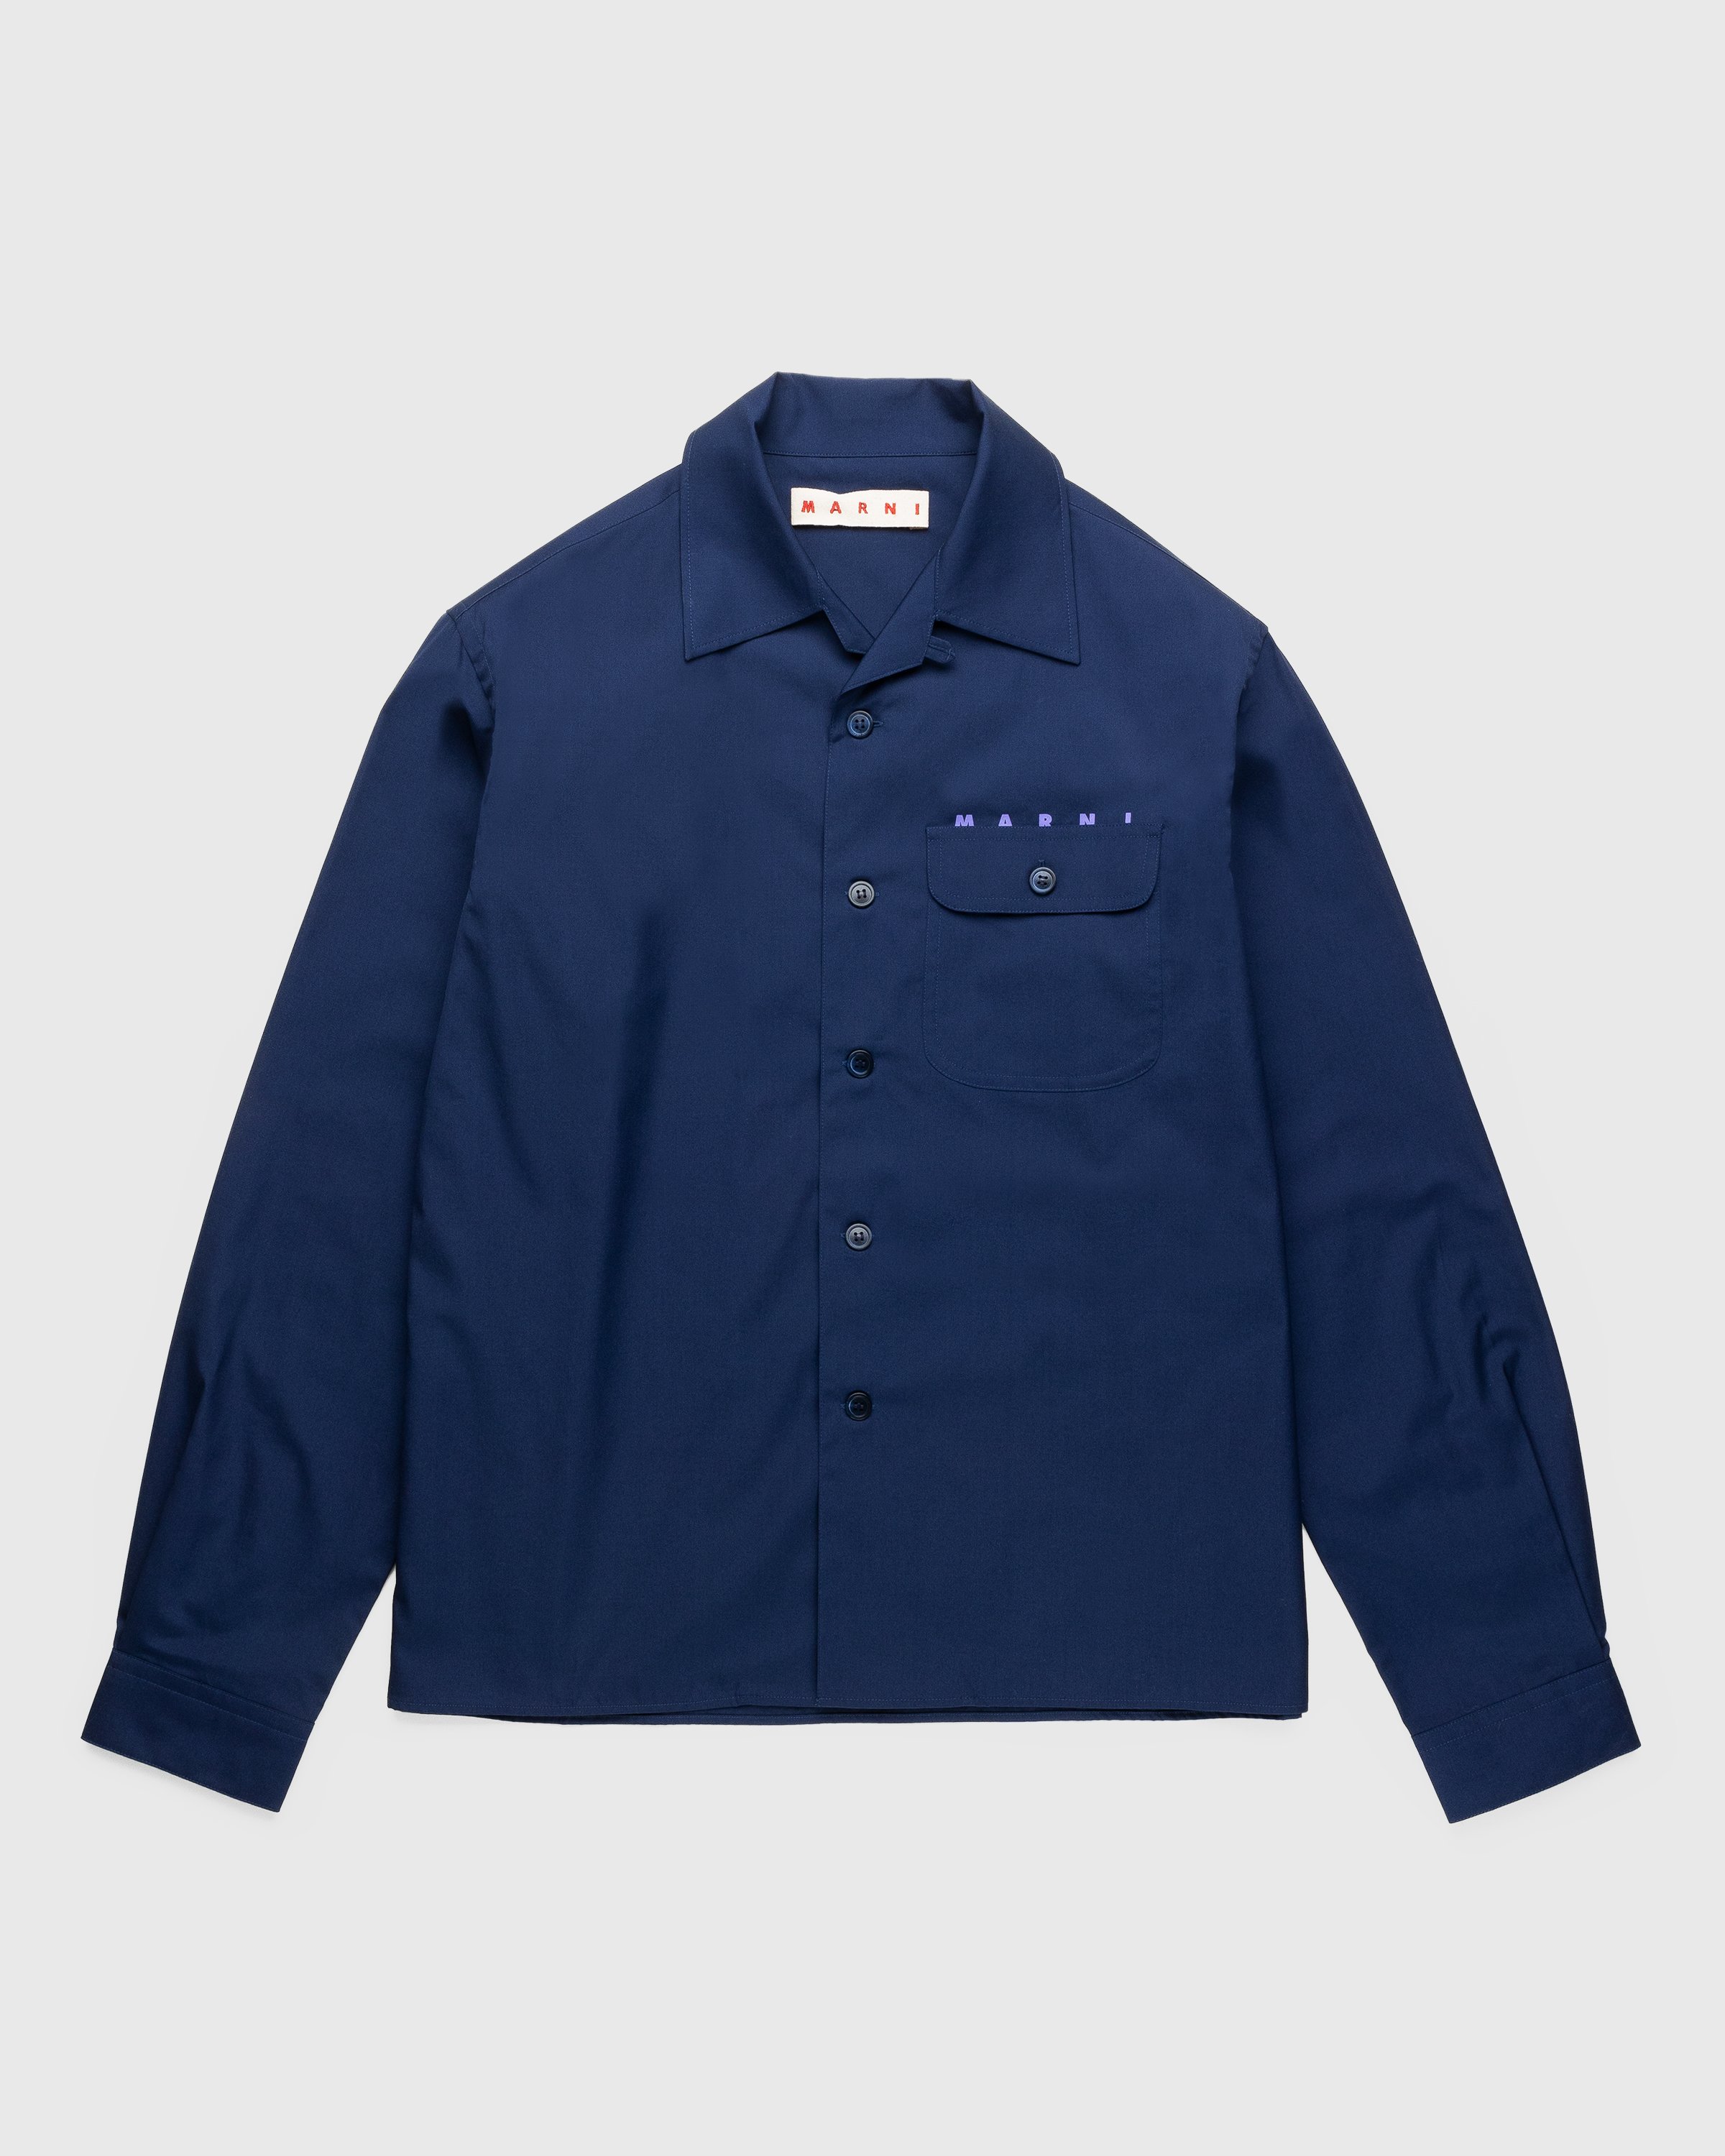 Marni - Logo Bowling Shirt Ink - Clothing - Blue - Image 1